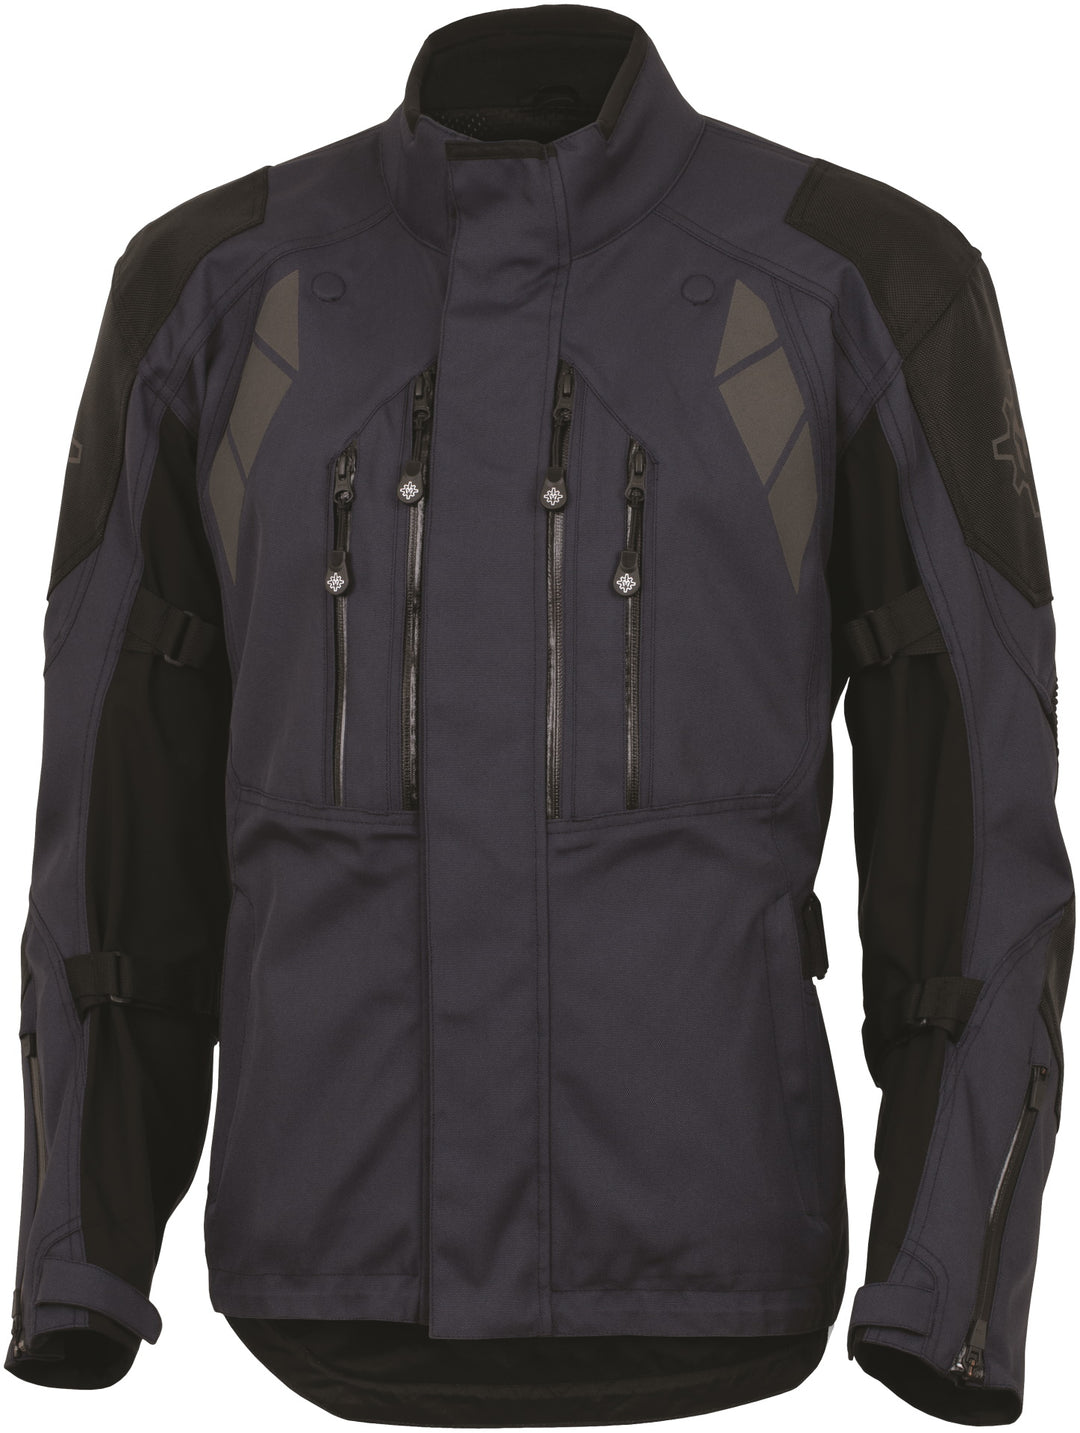 Men's Kilimanjaro Jacket 2.0 - Eagle Leather